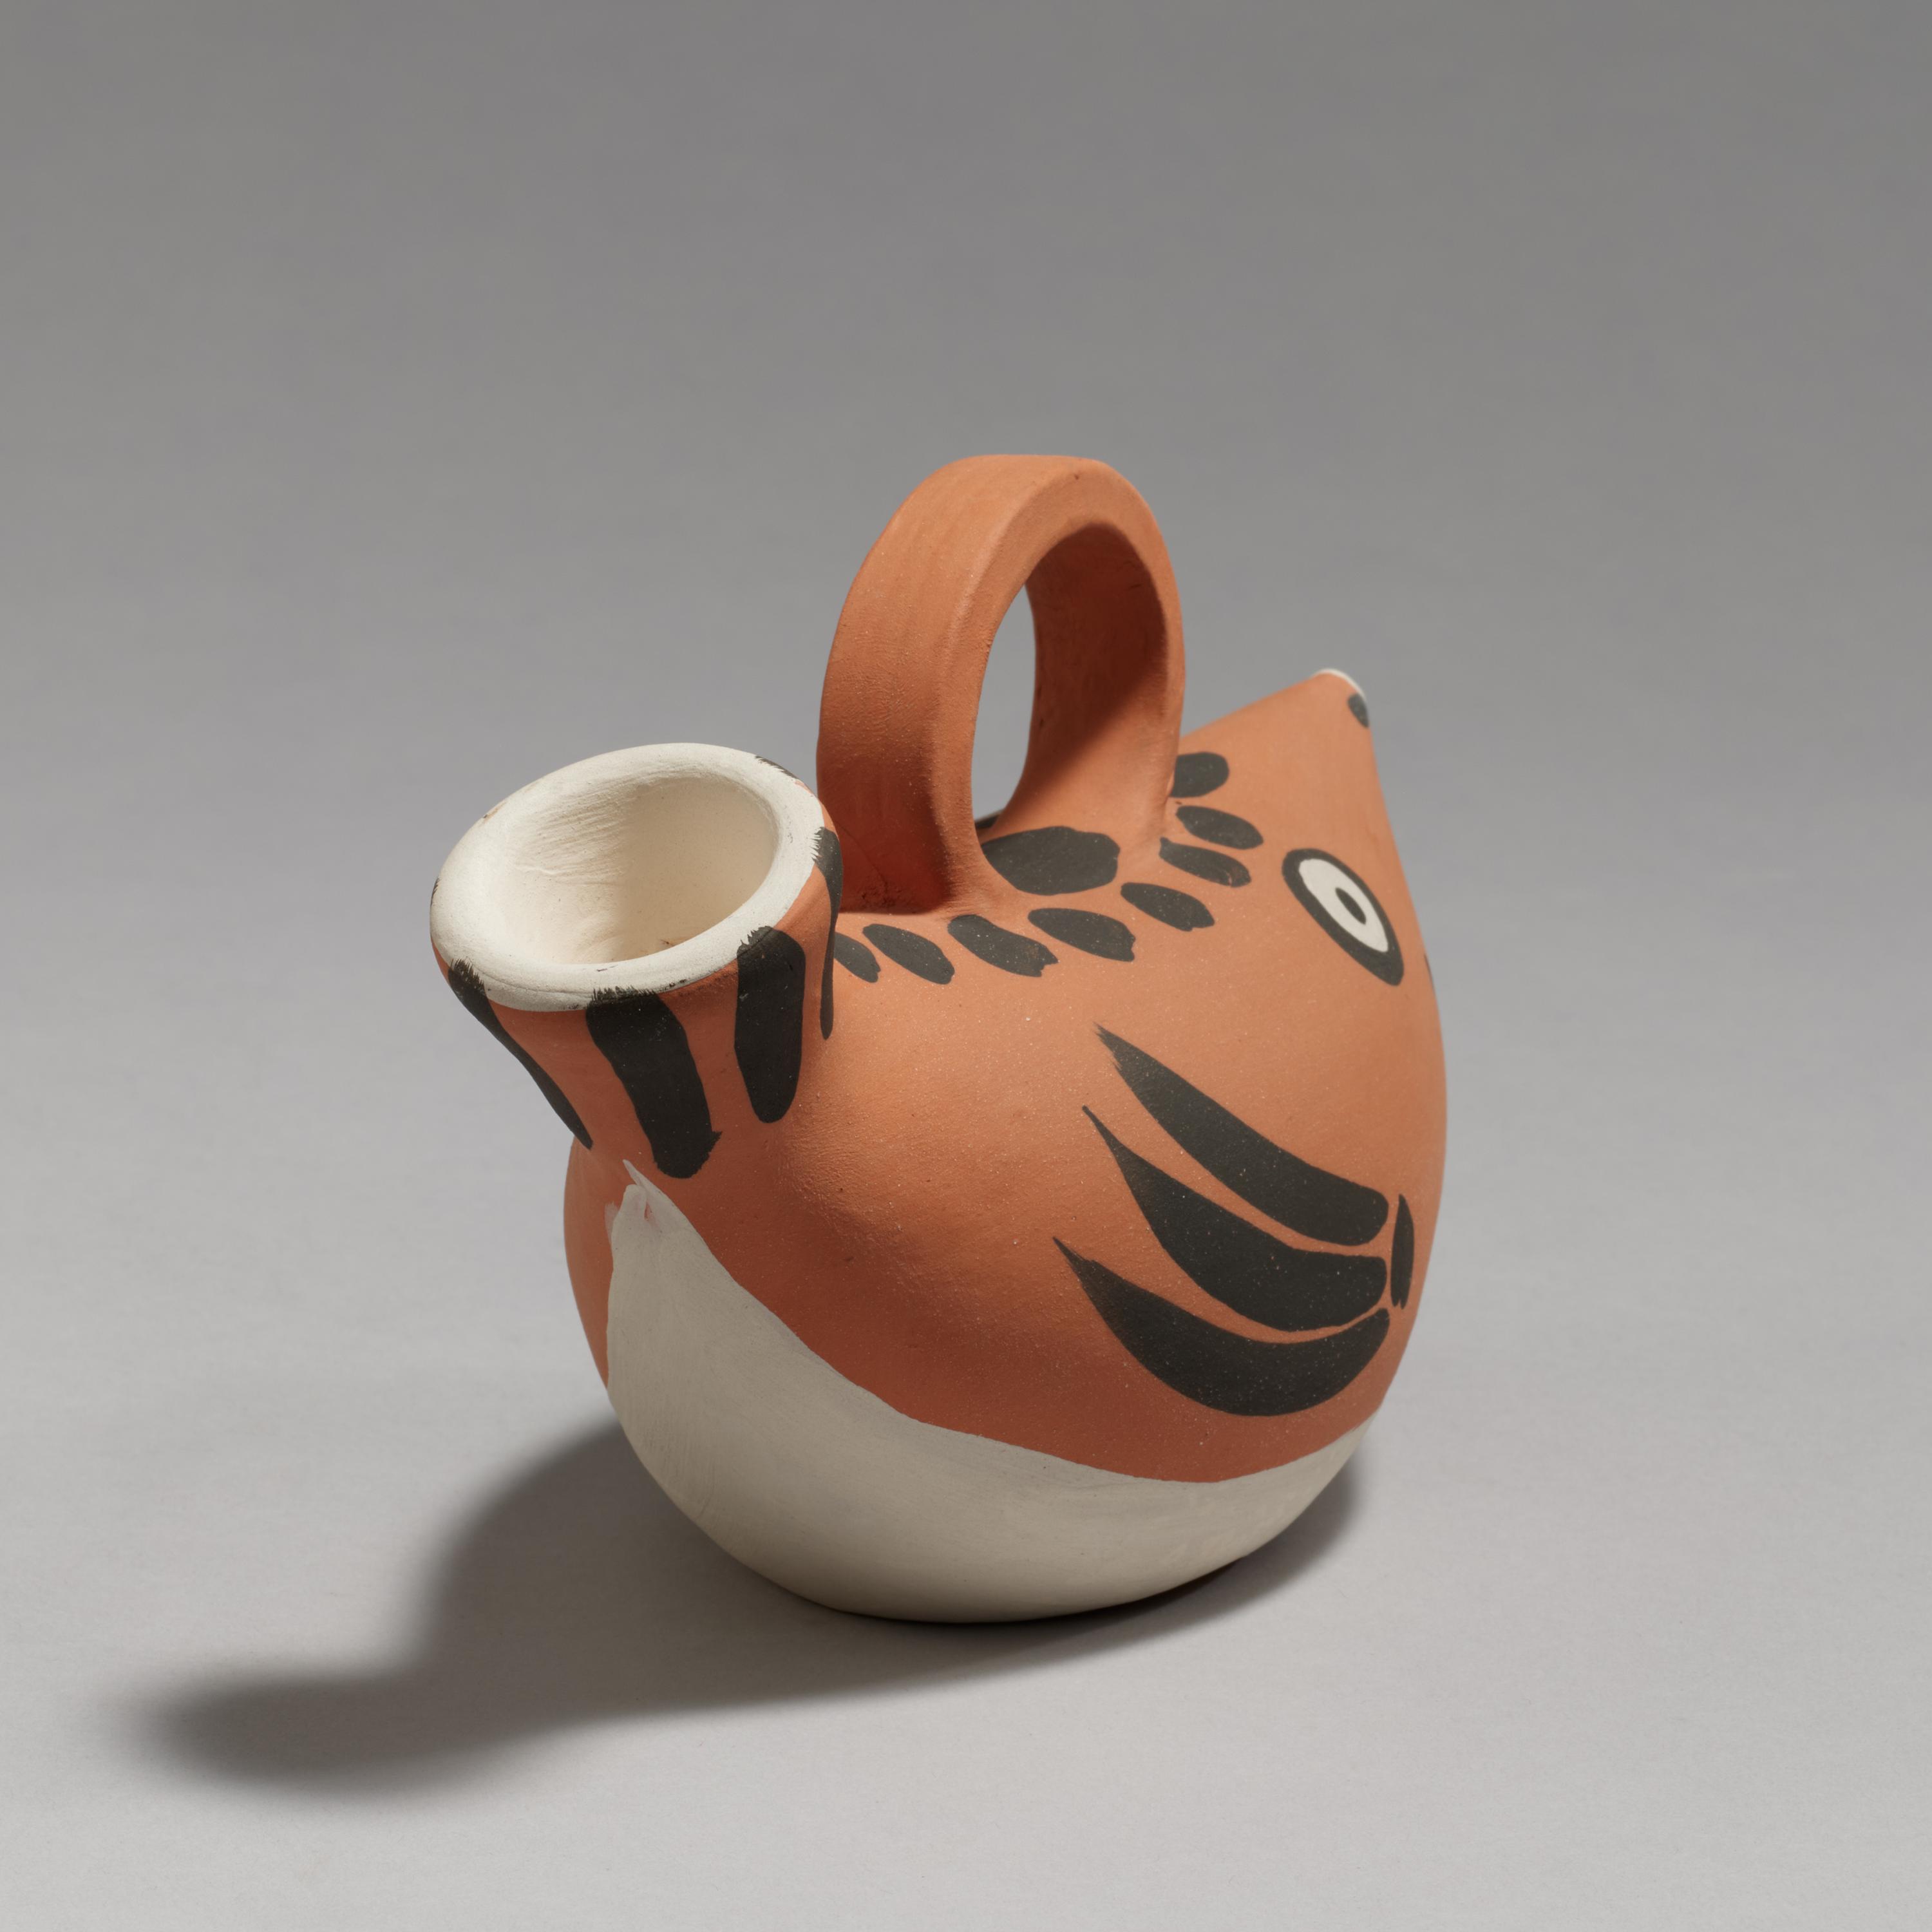 Pablo Picasso Ceramics: Fish Subject - Image 4 of 5